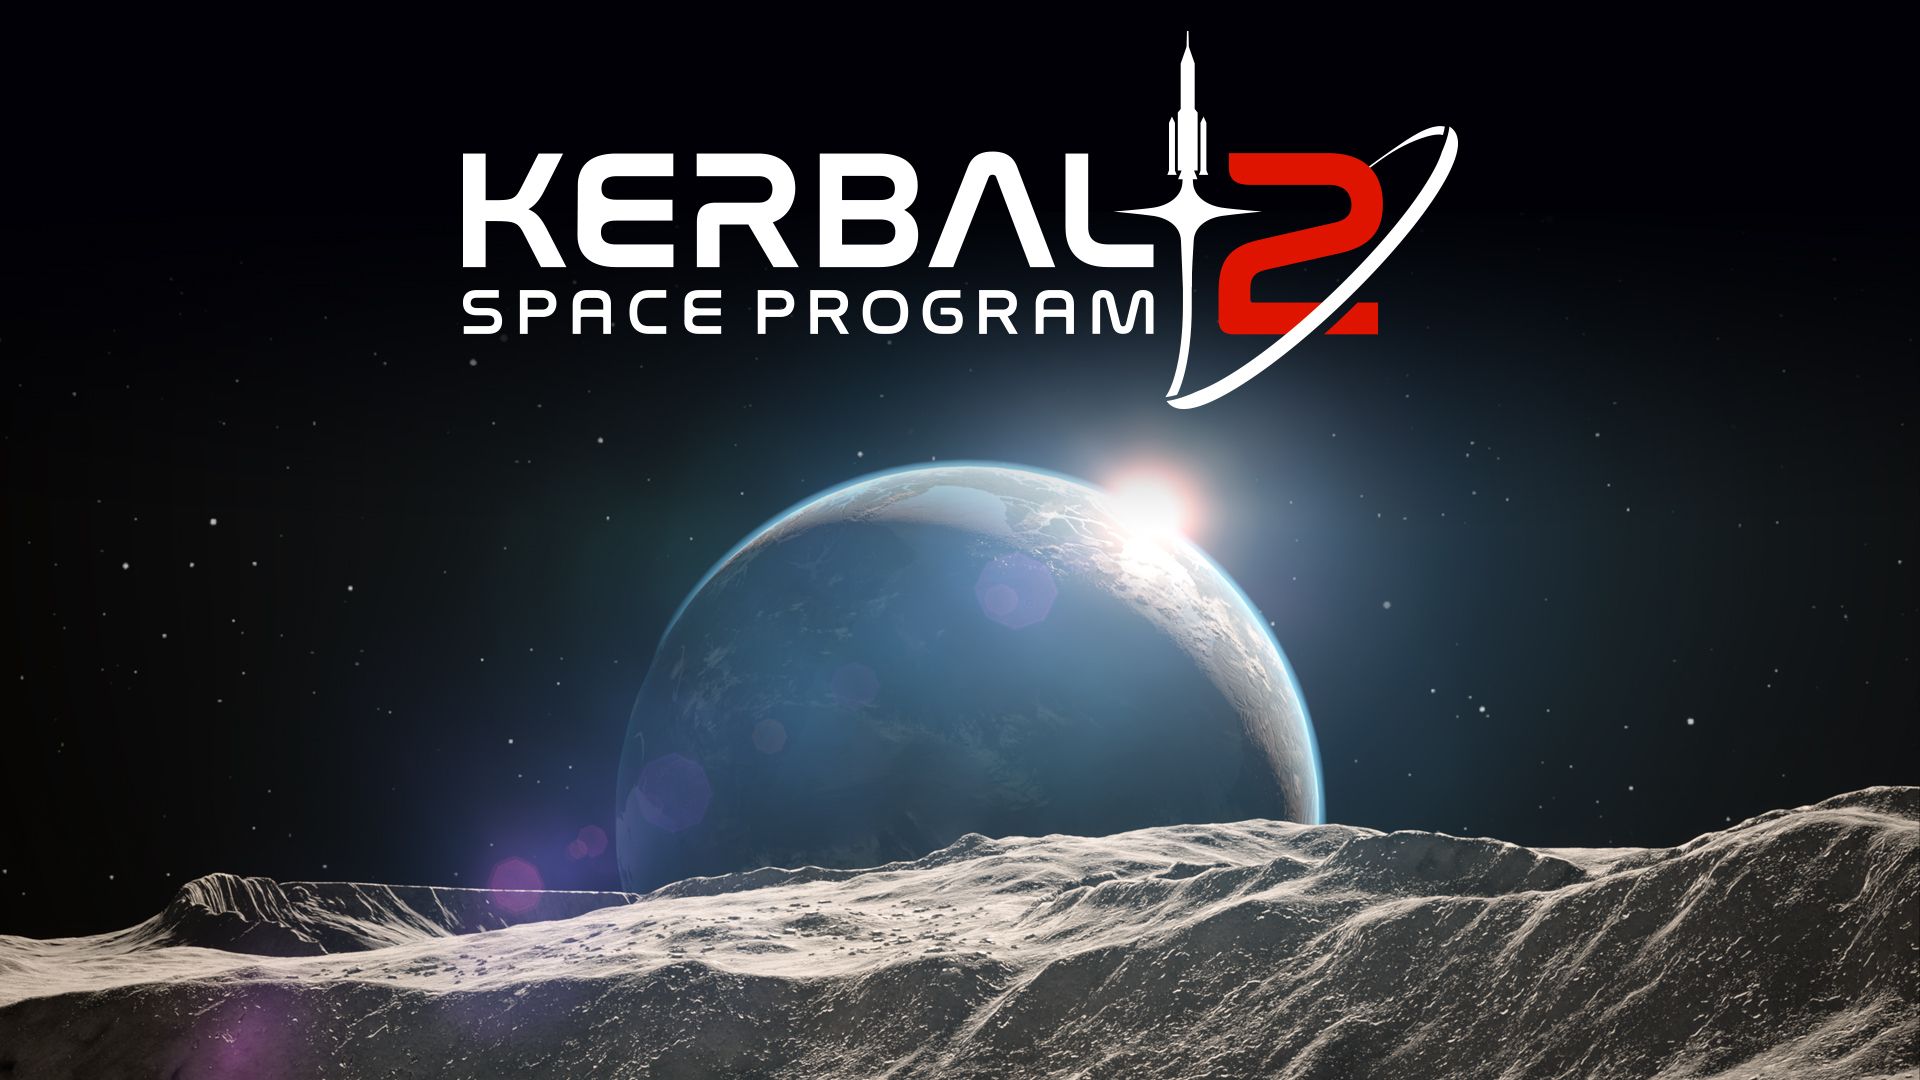 kerbal space program 2 postponed to 2023